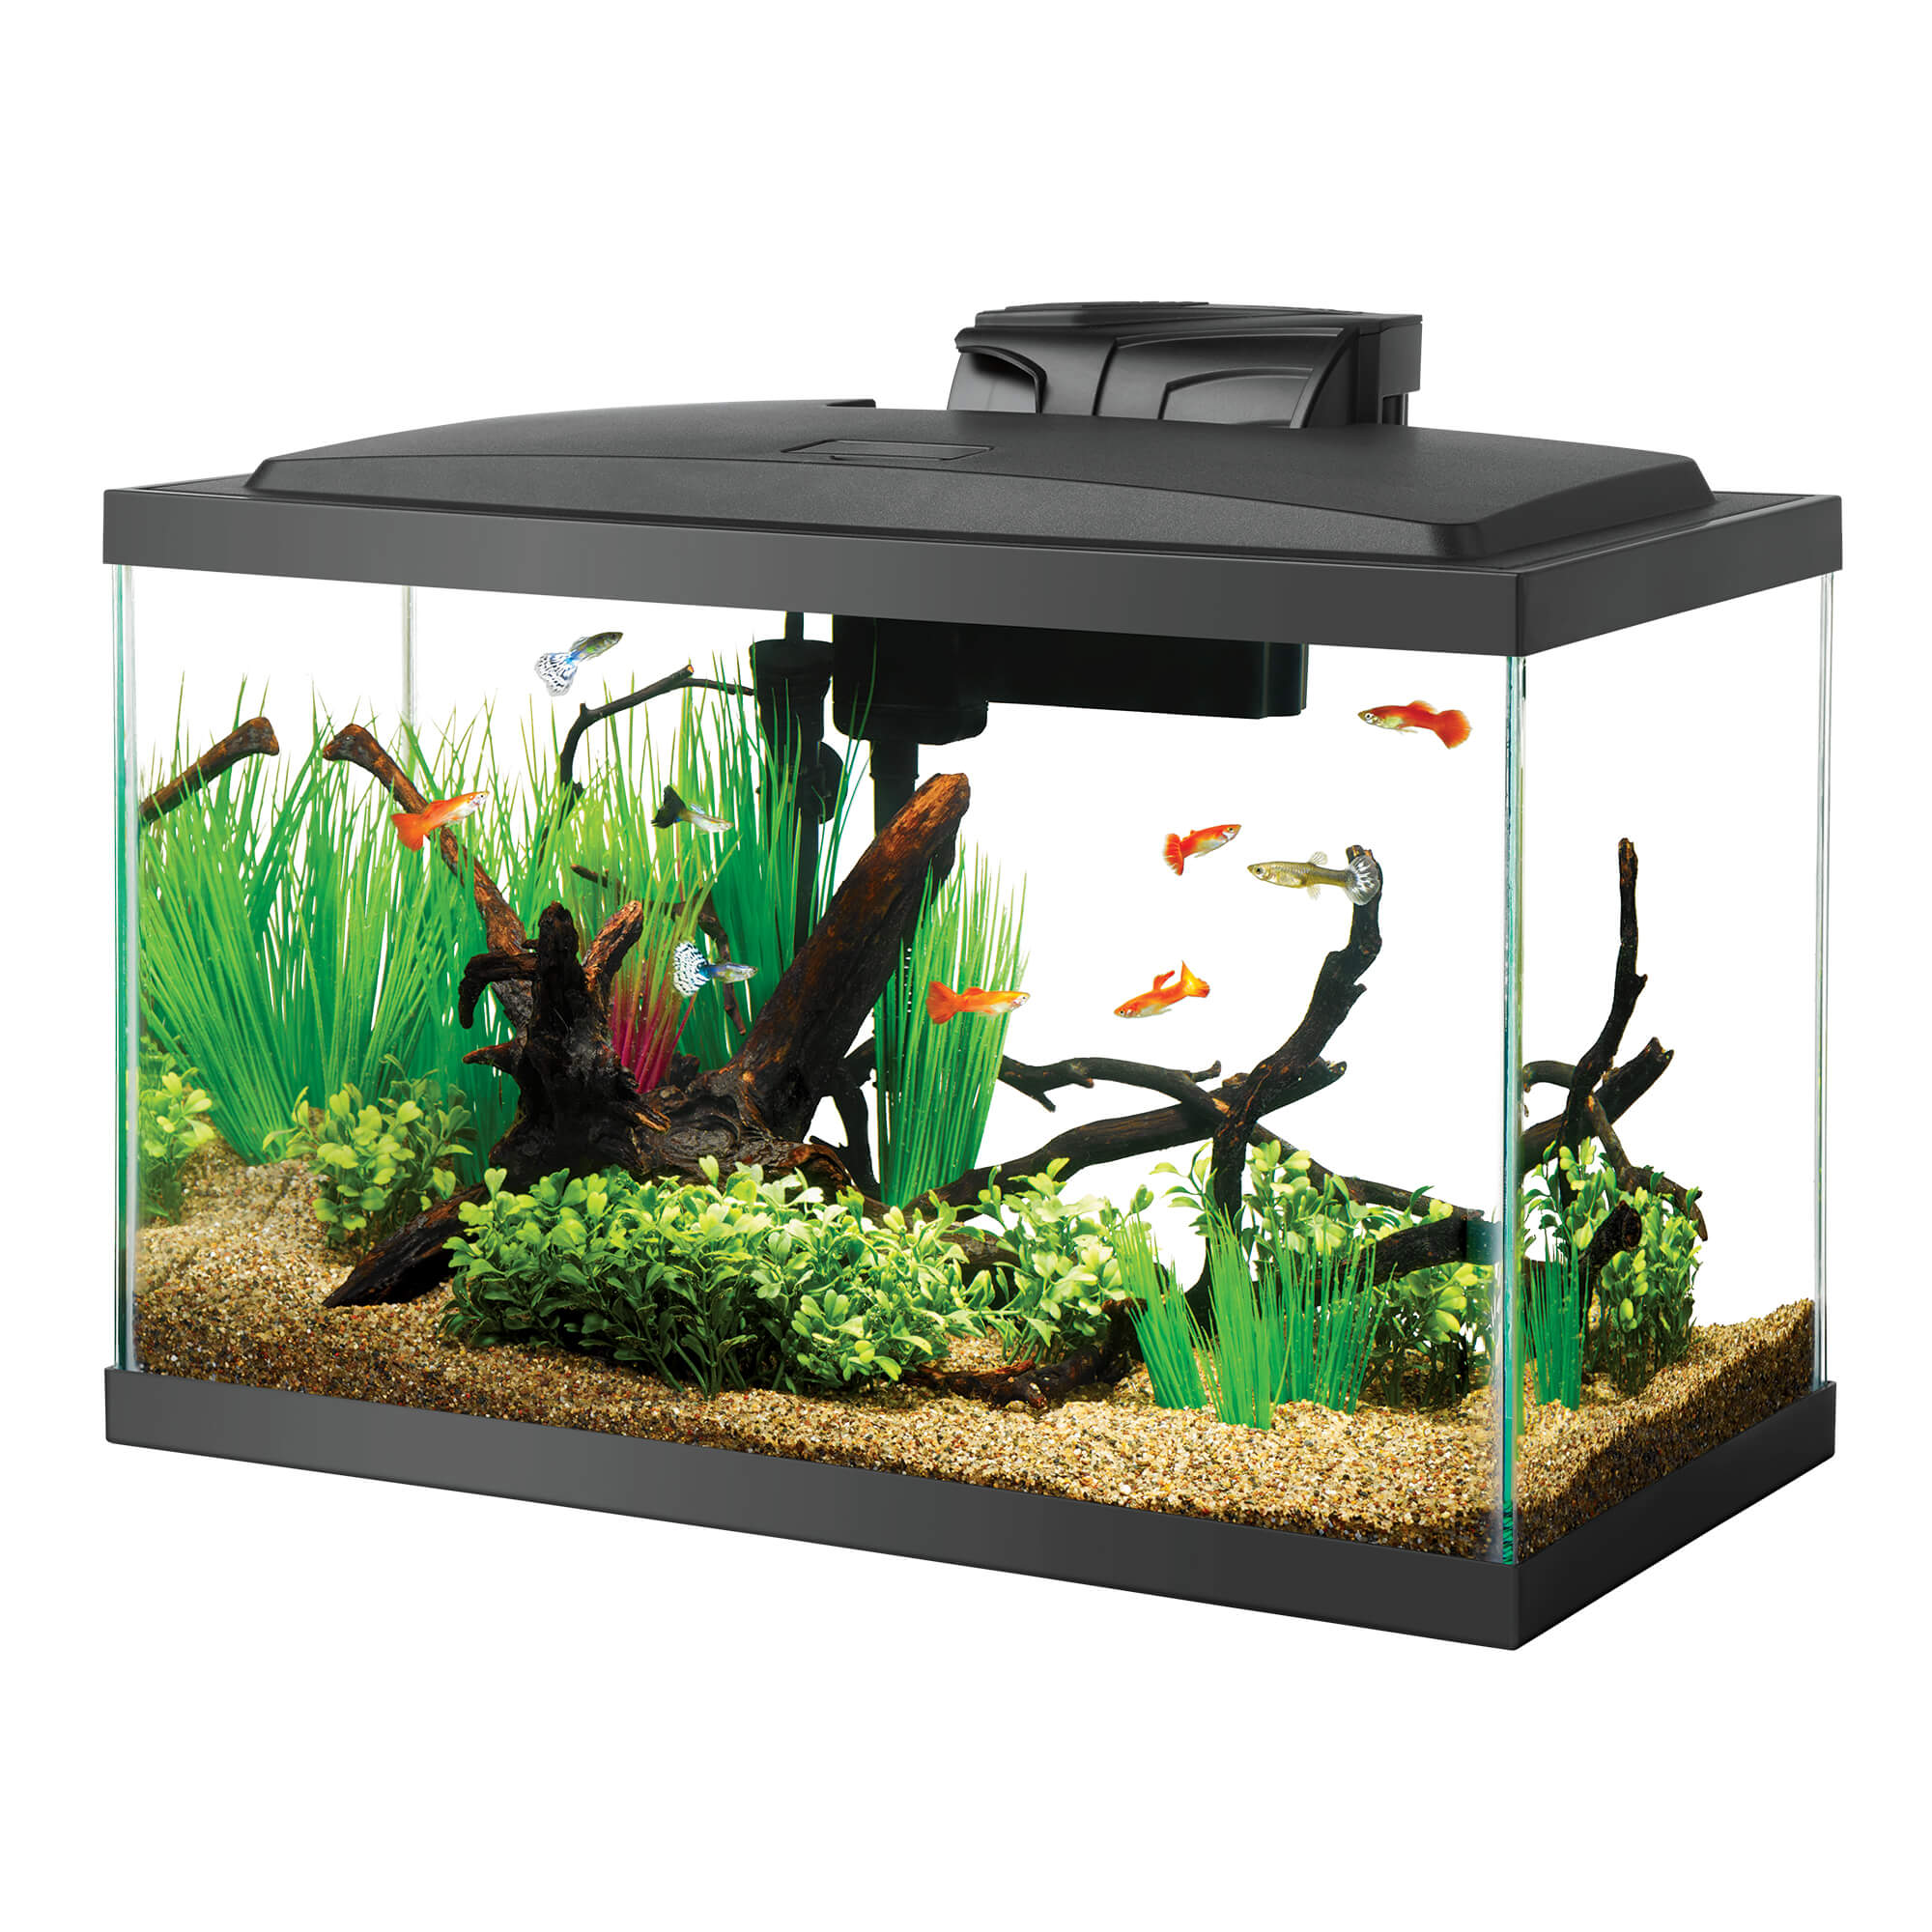 Aqueon LED 10 Aquarium Kit